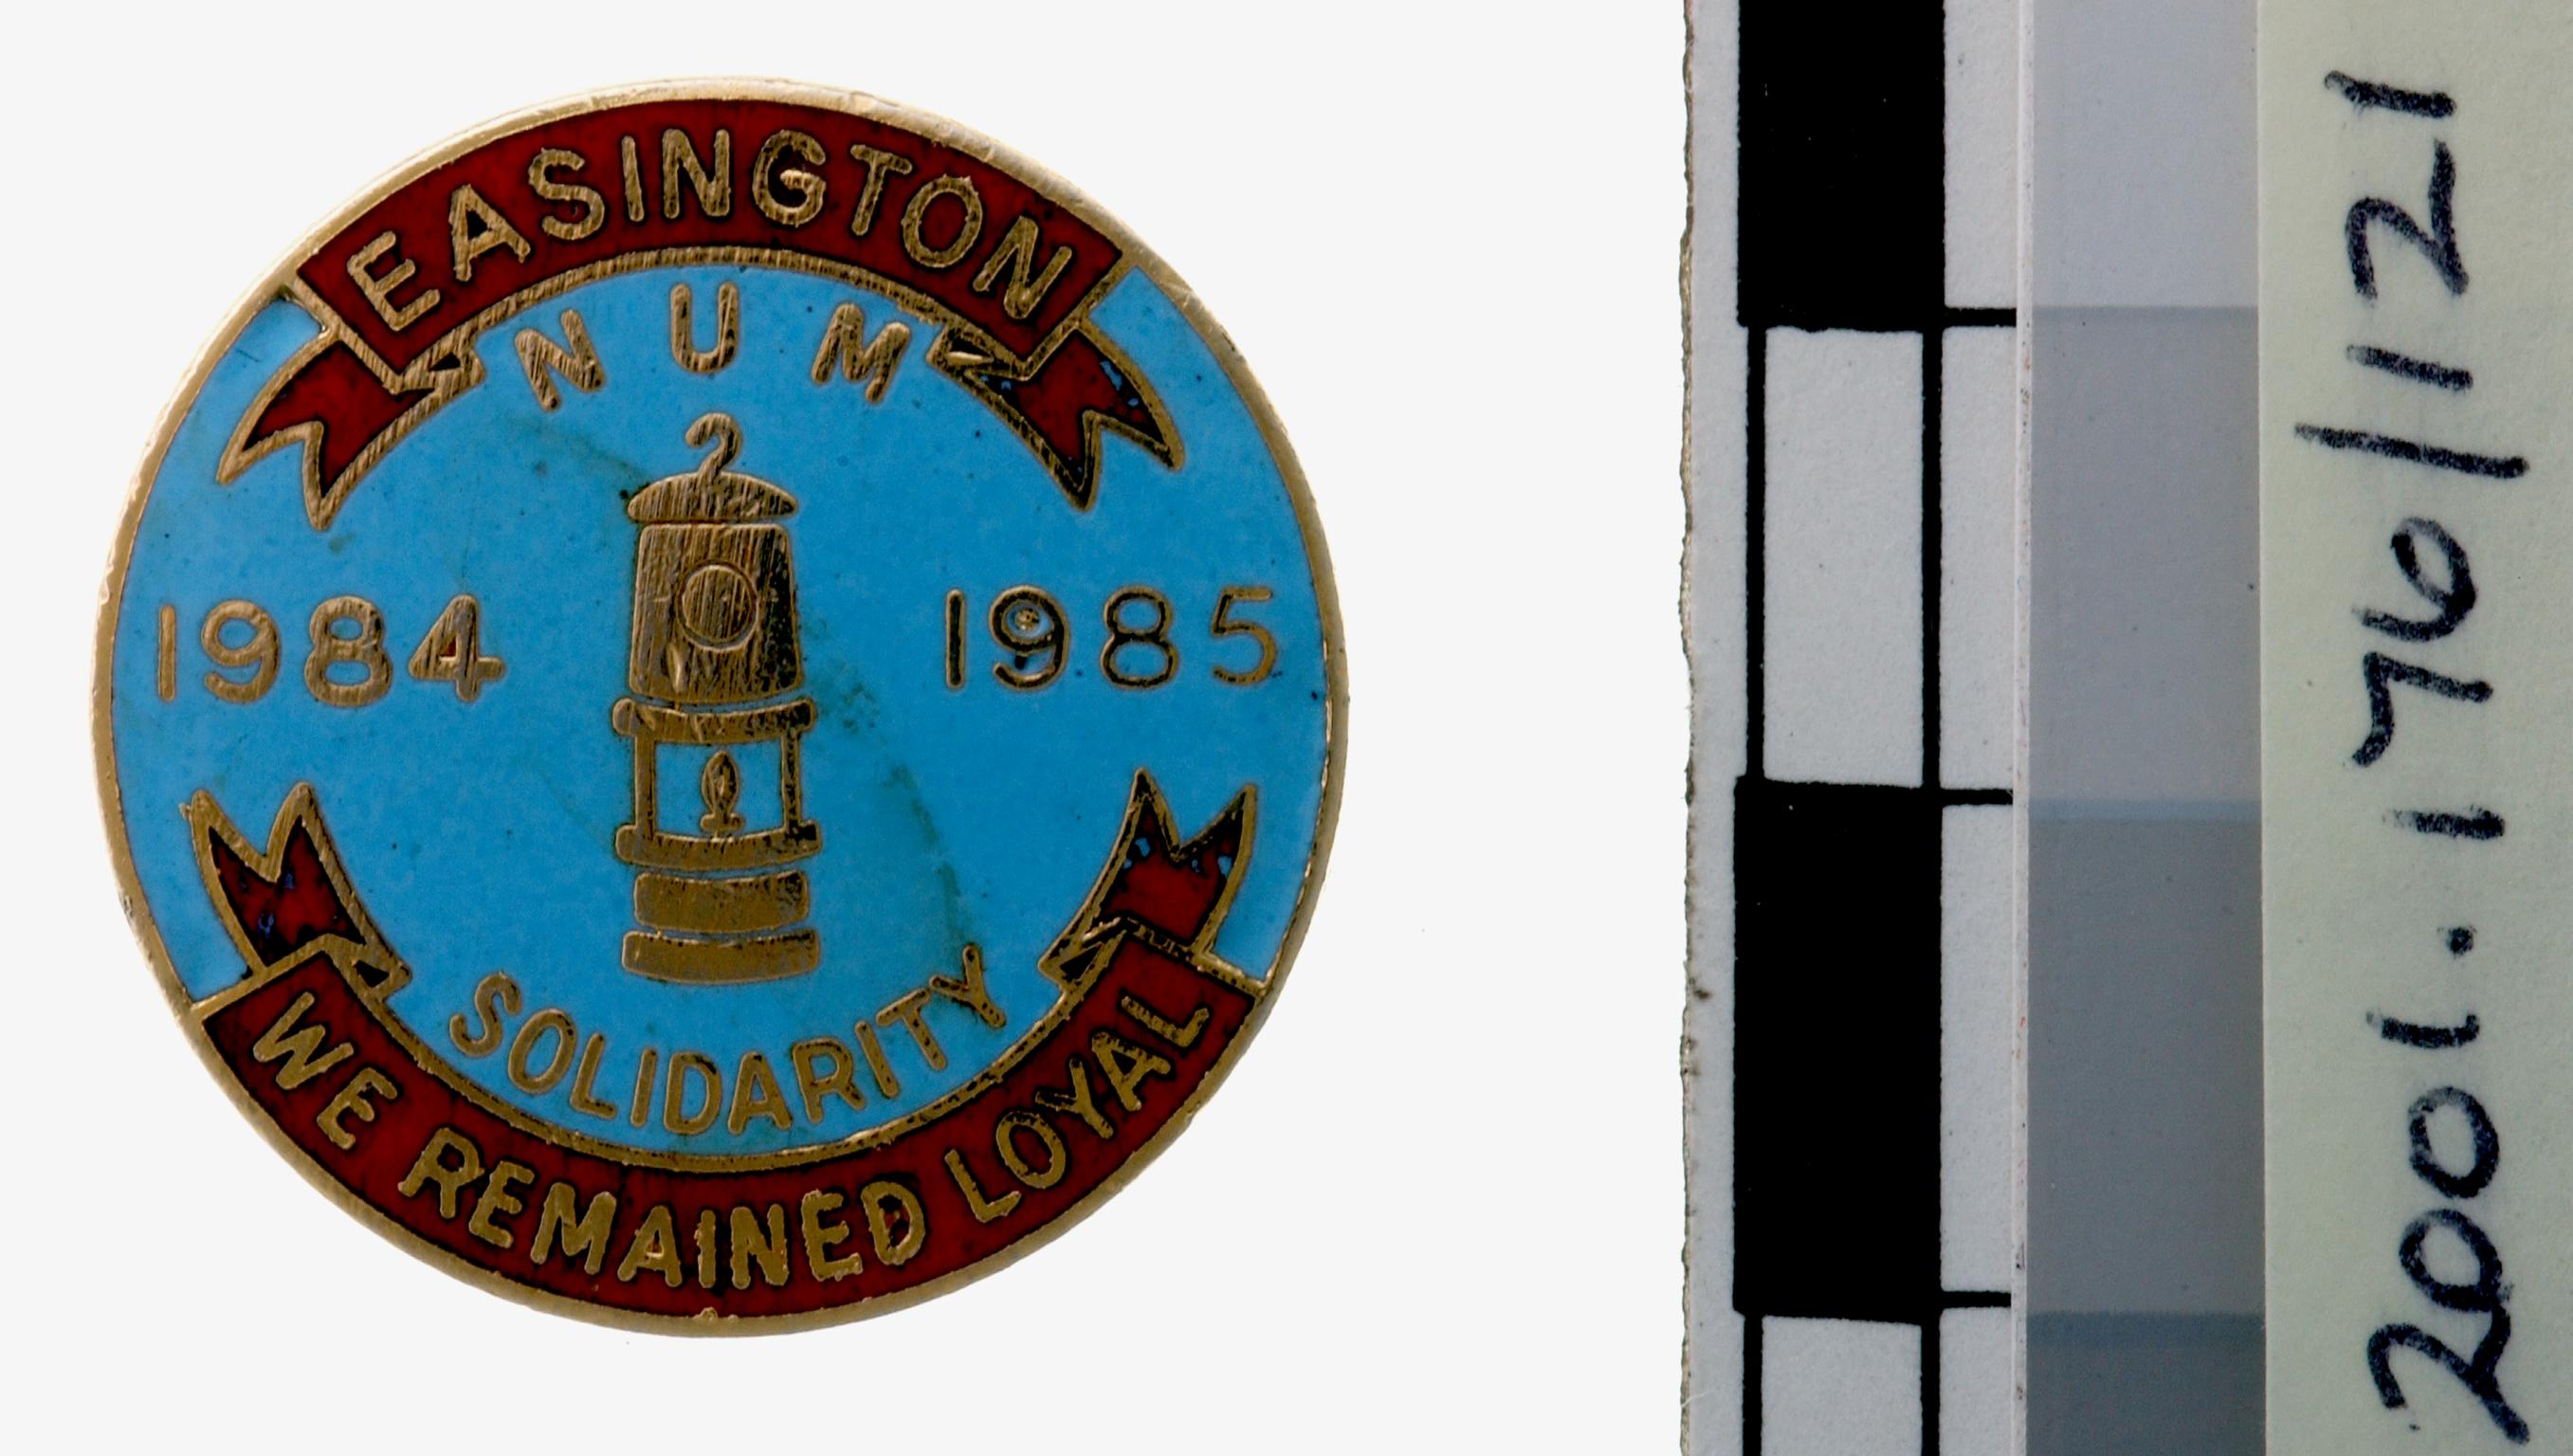 N.U.M. Durham Area, badge